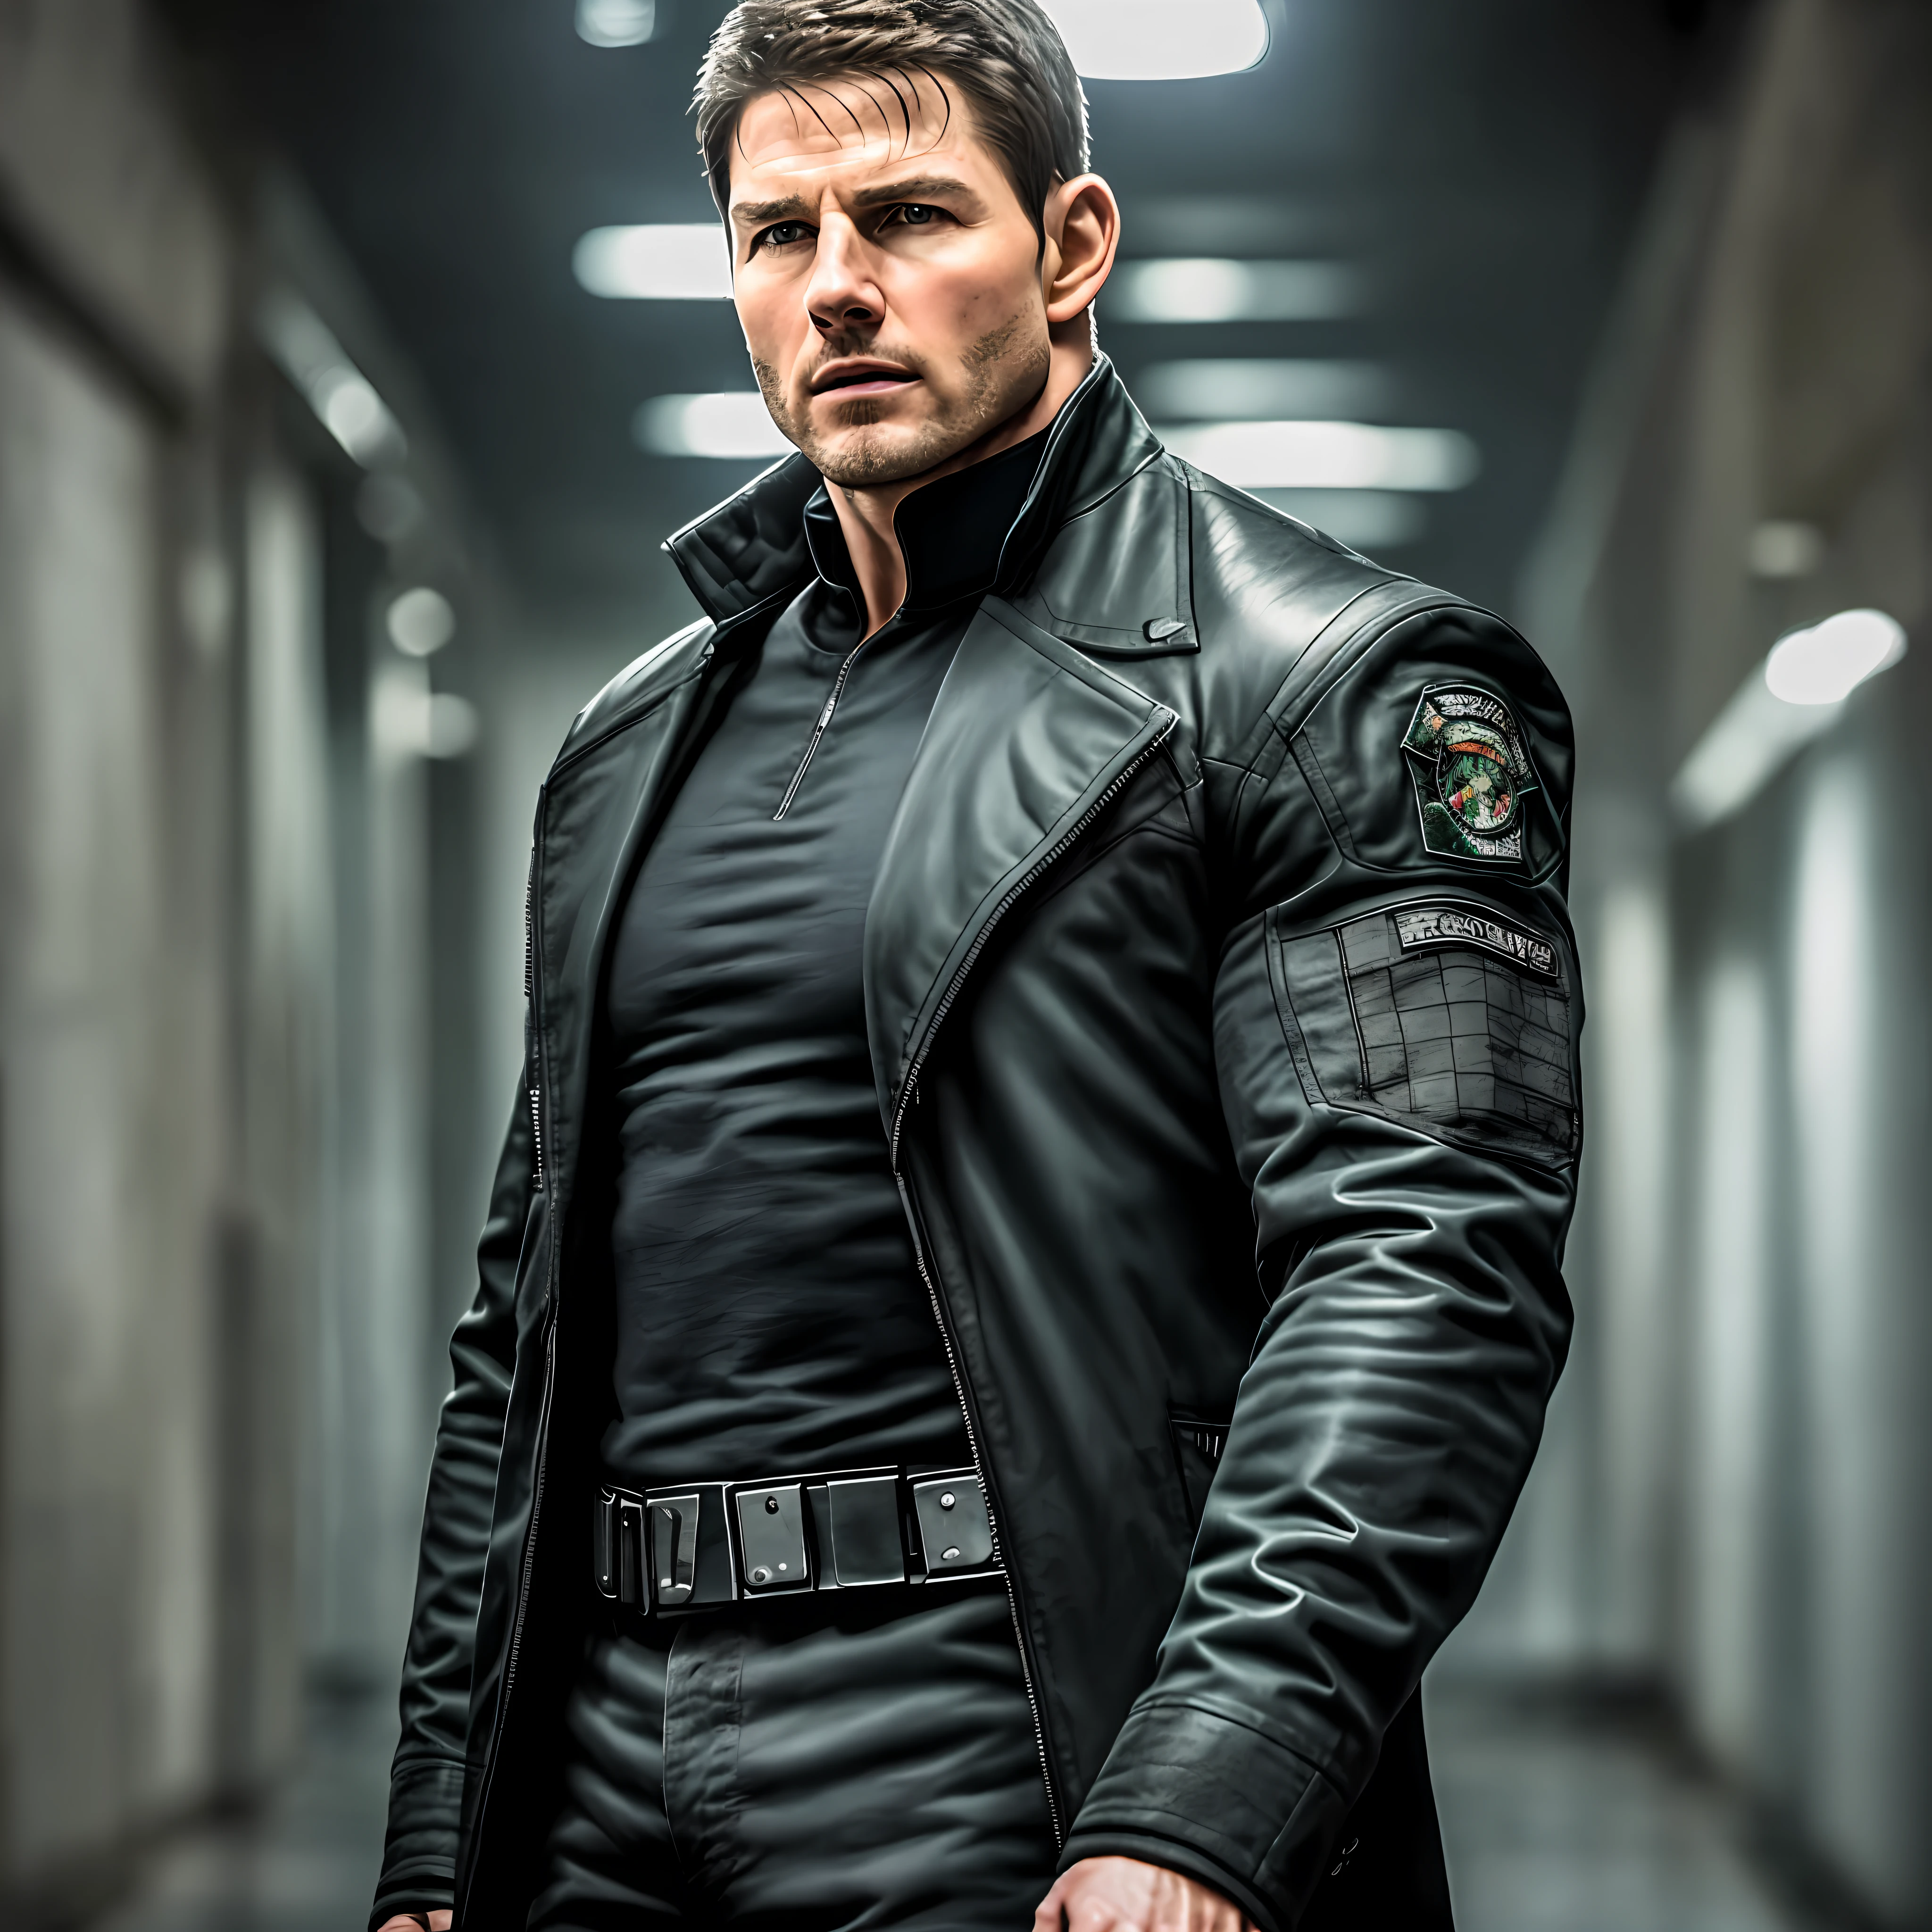 Chris Redfield se ele foi interpretado por Tom Cruise em live action, vestindo mangas compridas pretas, casaco preto, alto e gostoso, melhor qualidade, Obra de arte, alta resolução, iluminação suave, corredor escuro e sombrio ao fundo, rosto detalhado, super realista, foco central